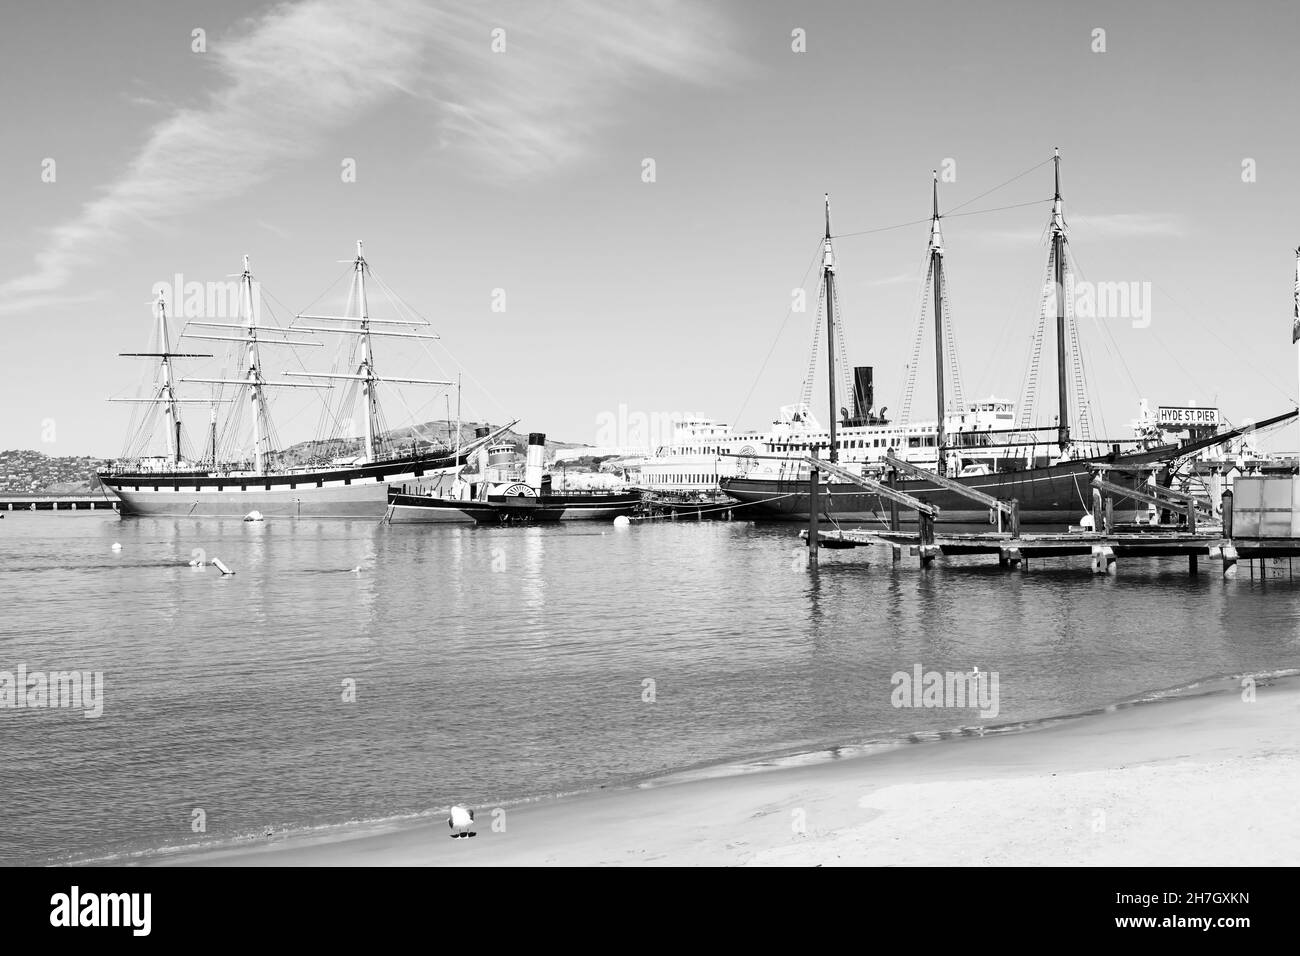 Schwarz-weiß, monochromes Bild von alten Schiffen am Hyde Street Pier, San Francisco, Kalifornien, USA. Stockfoto